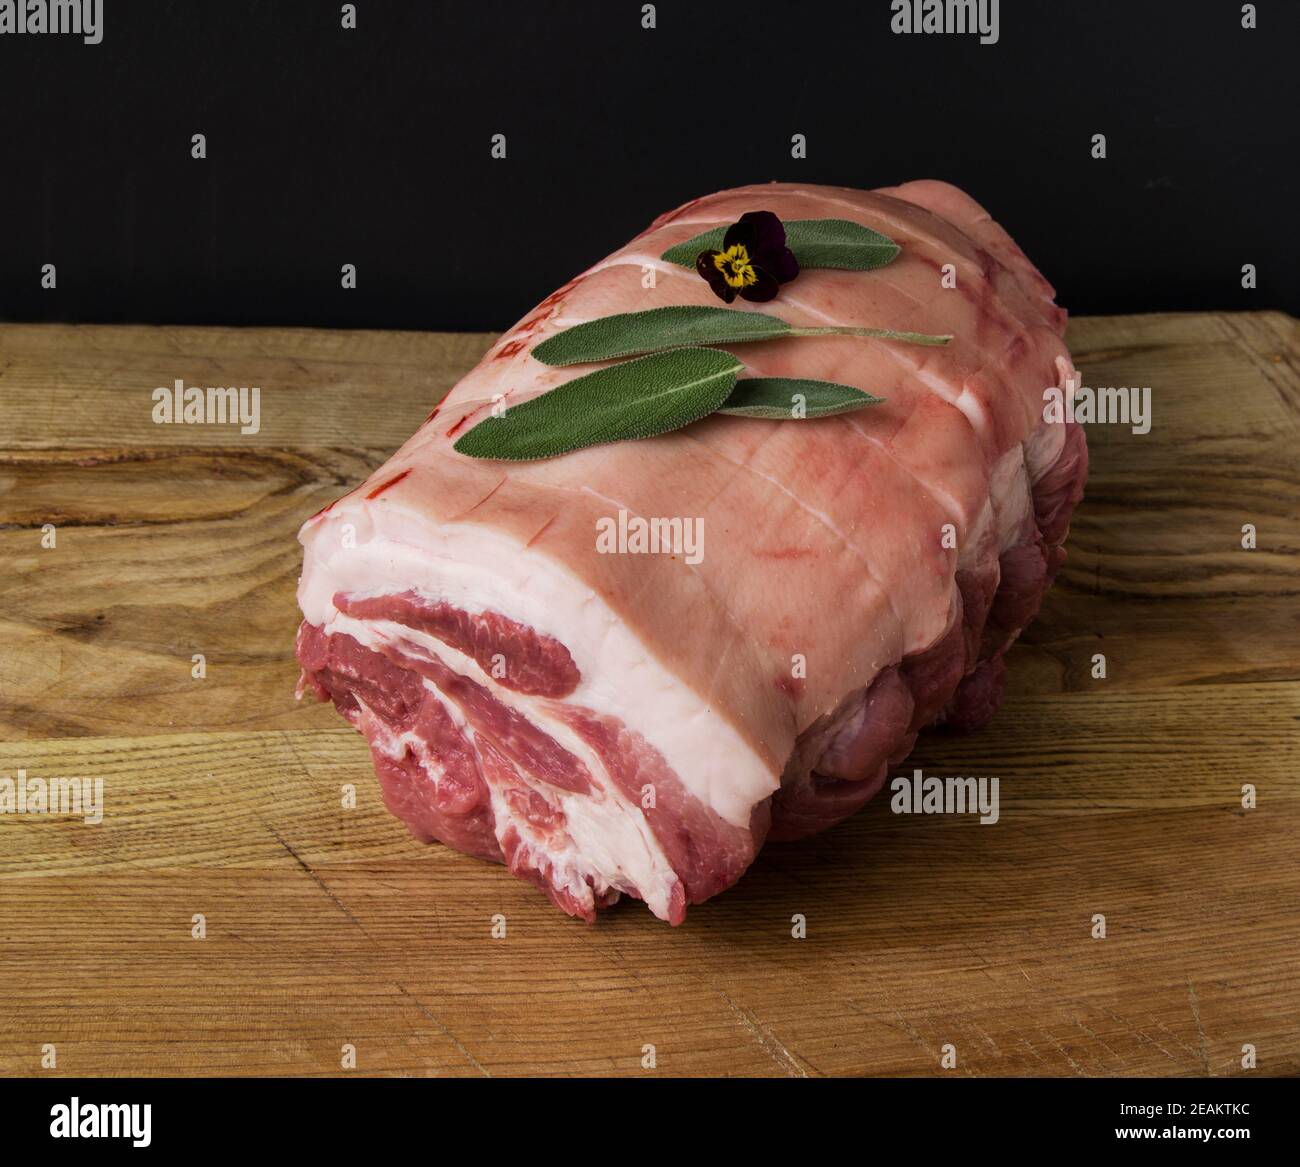 Rohes Schweinefleisch Joint fotografiert auf einem hölzernen Schneidebrett mit Schwarzer Hintergrund Stockfoto